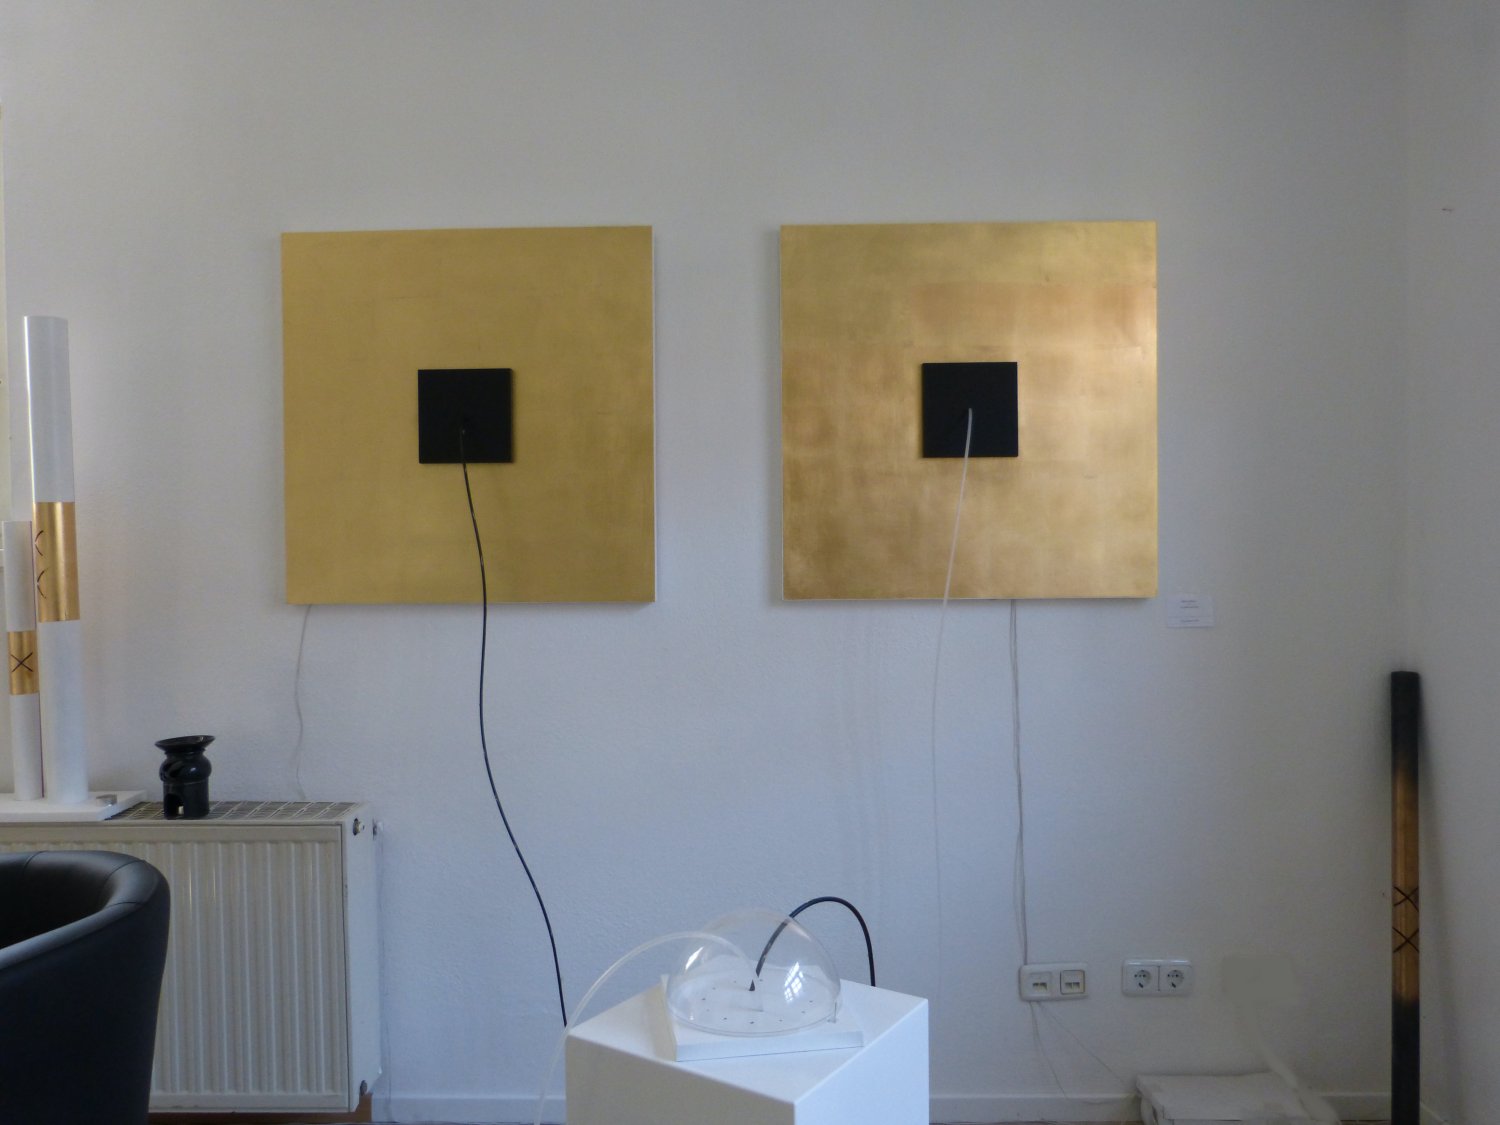 Karrol LED-ART-Galerie